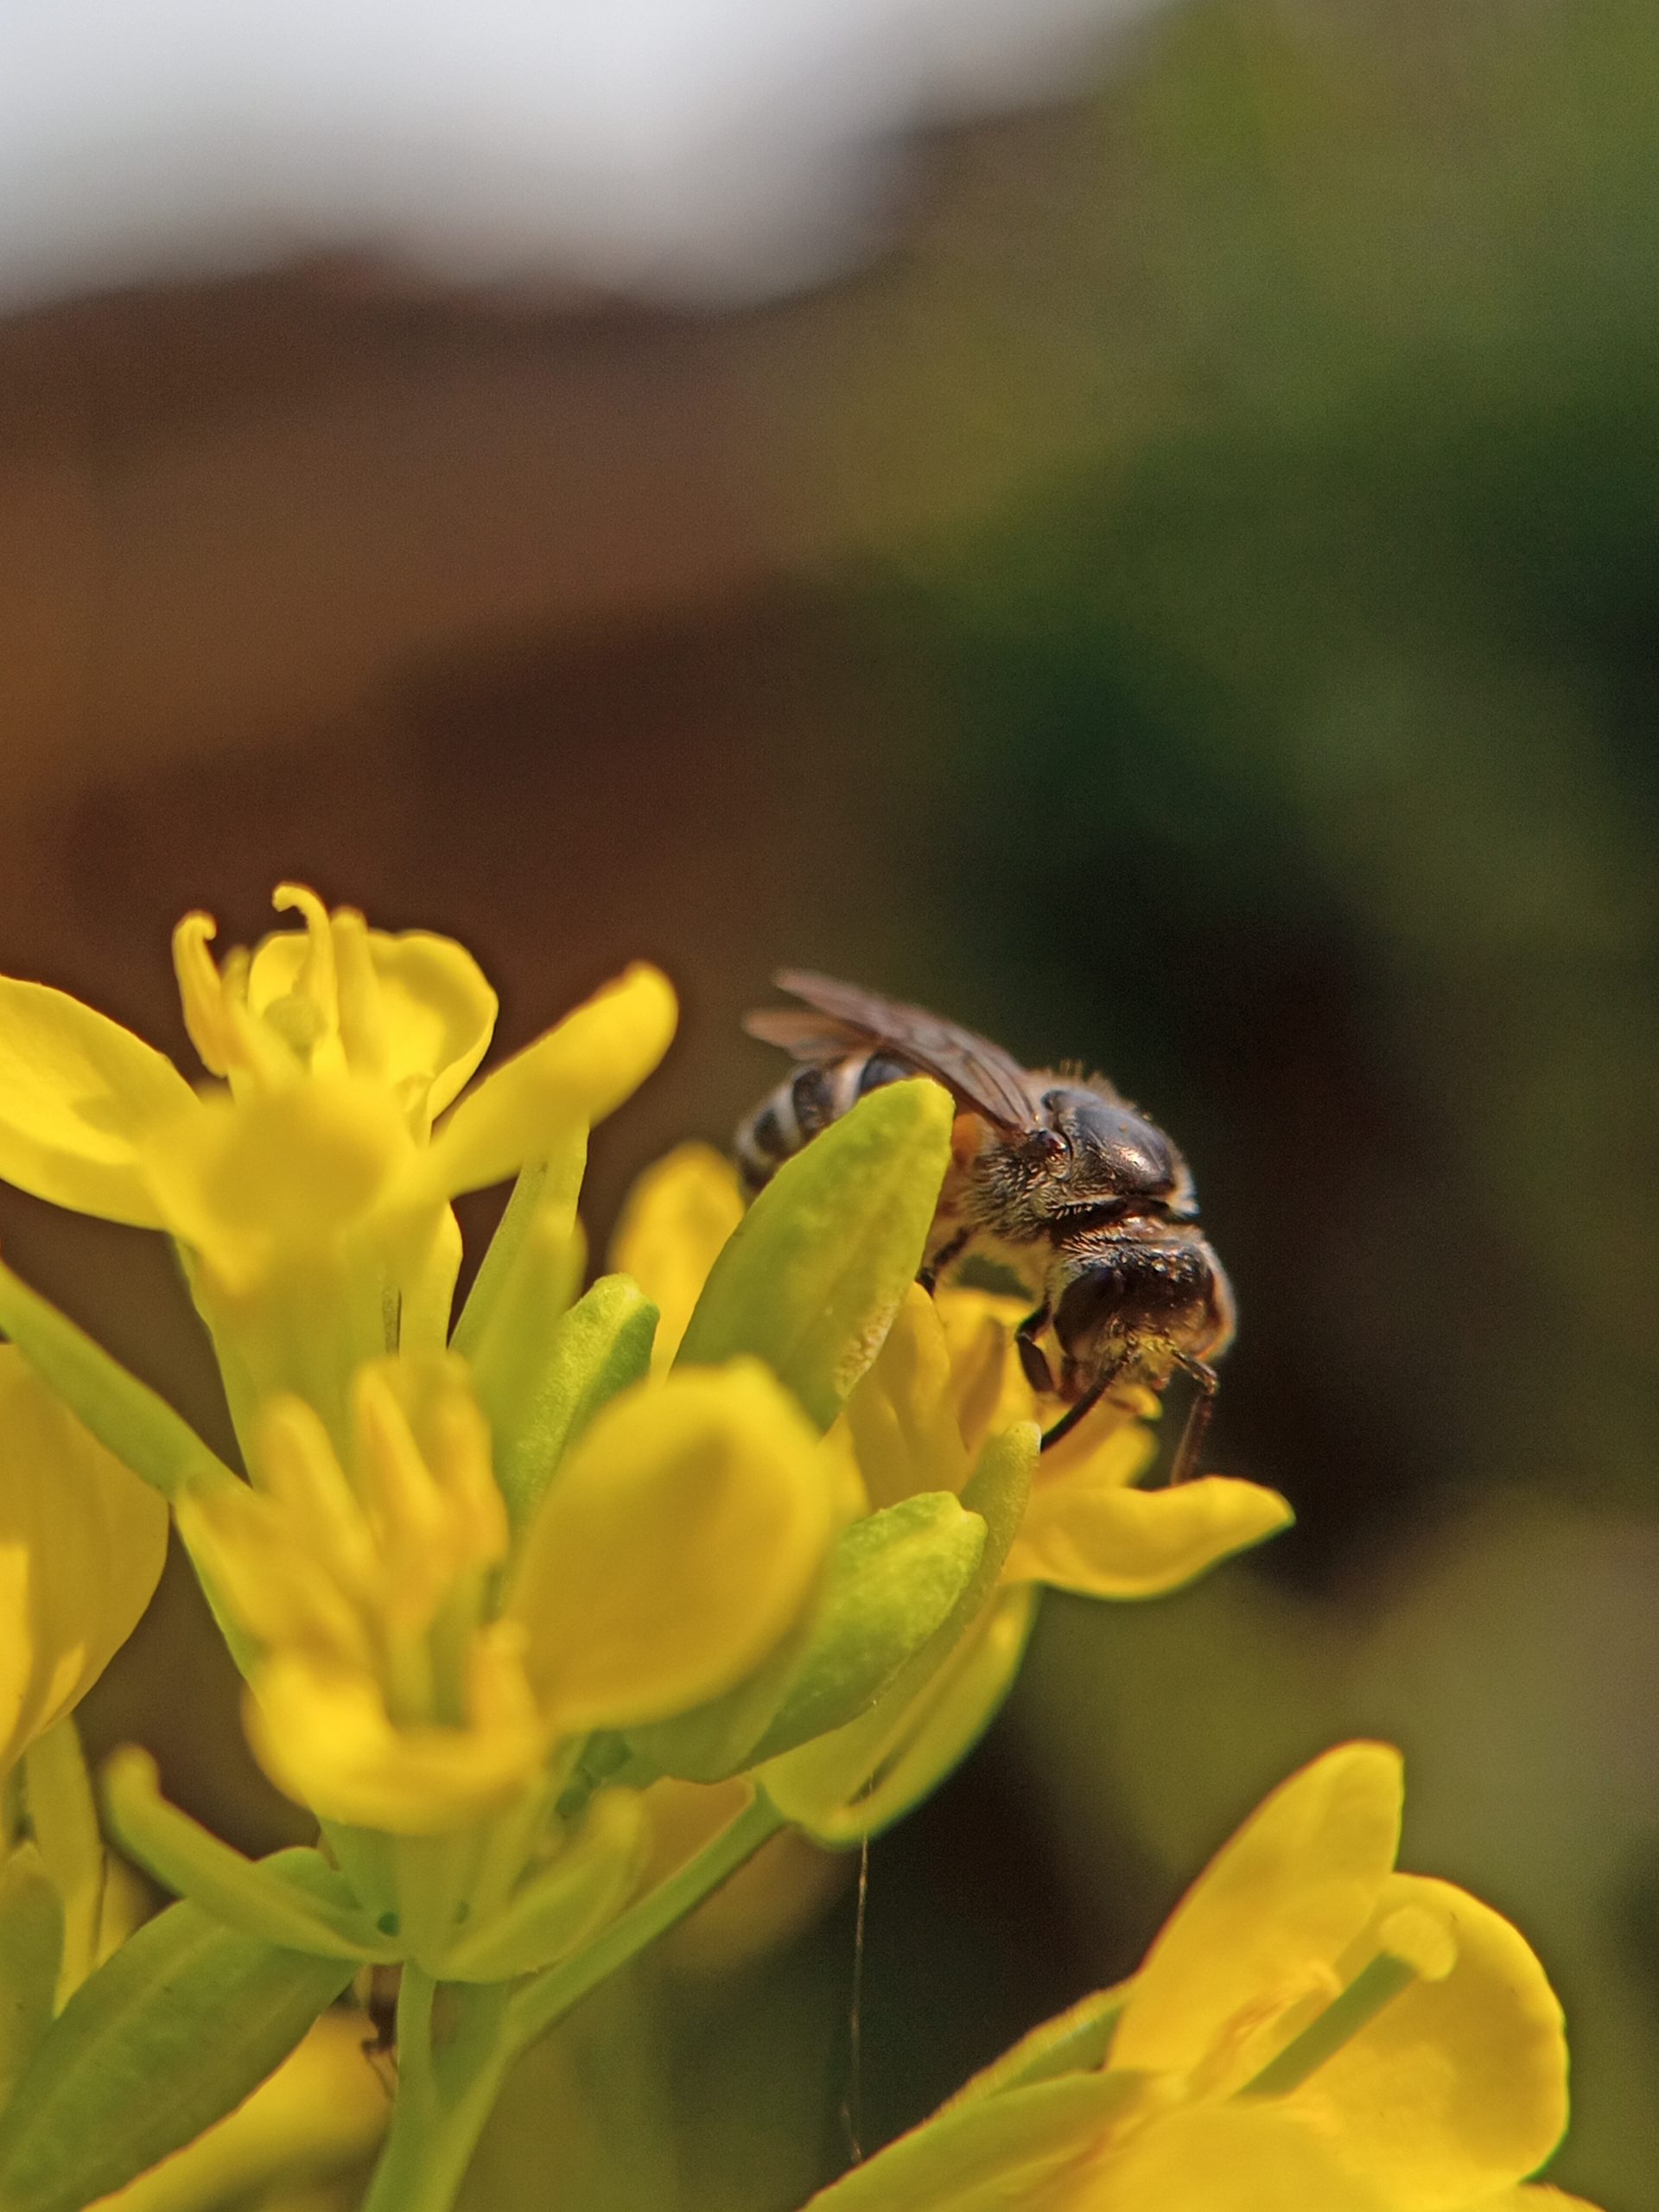 A honeybee on flowers